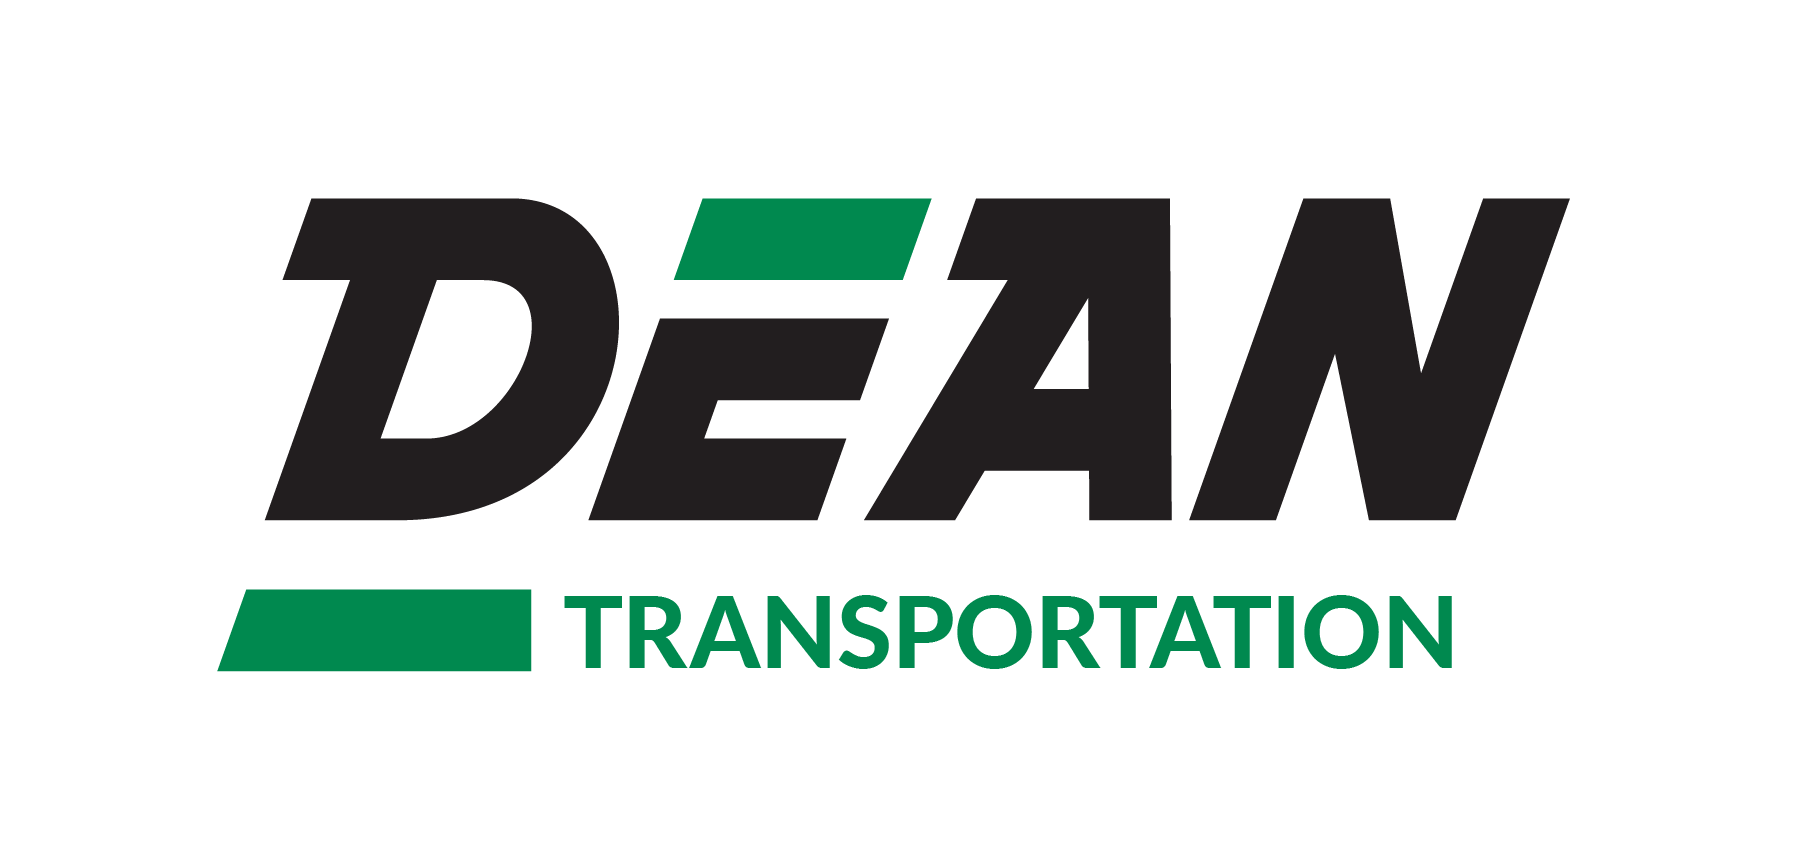 Dean Transportation